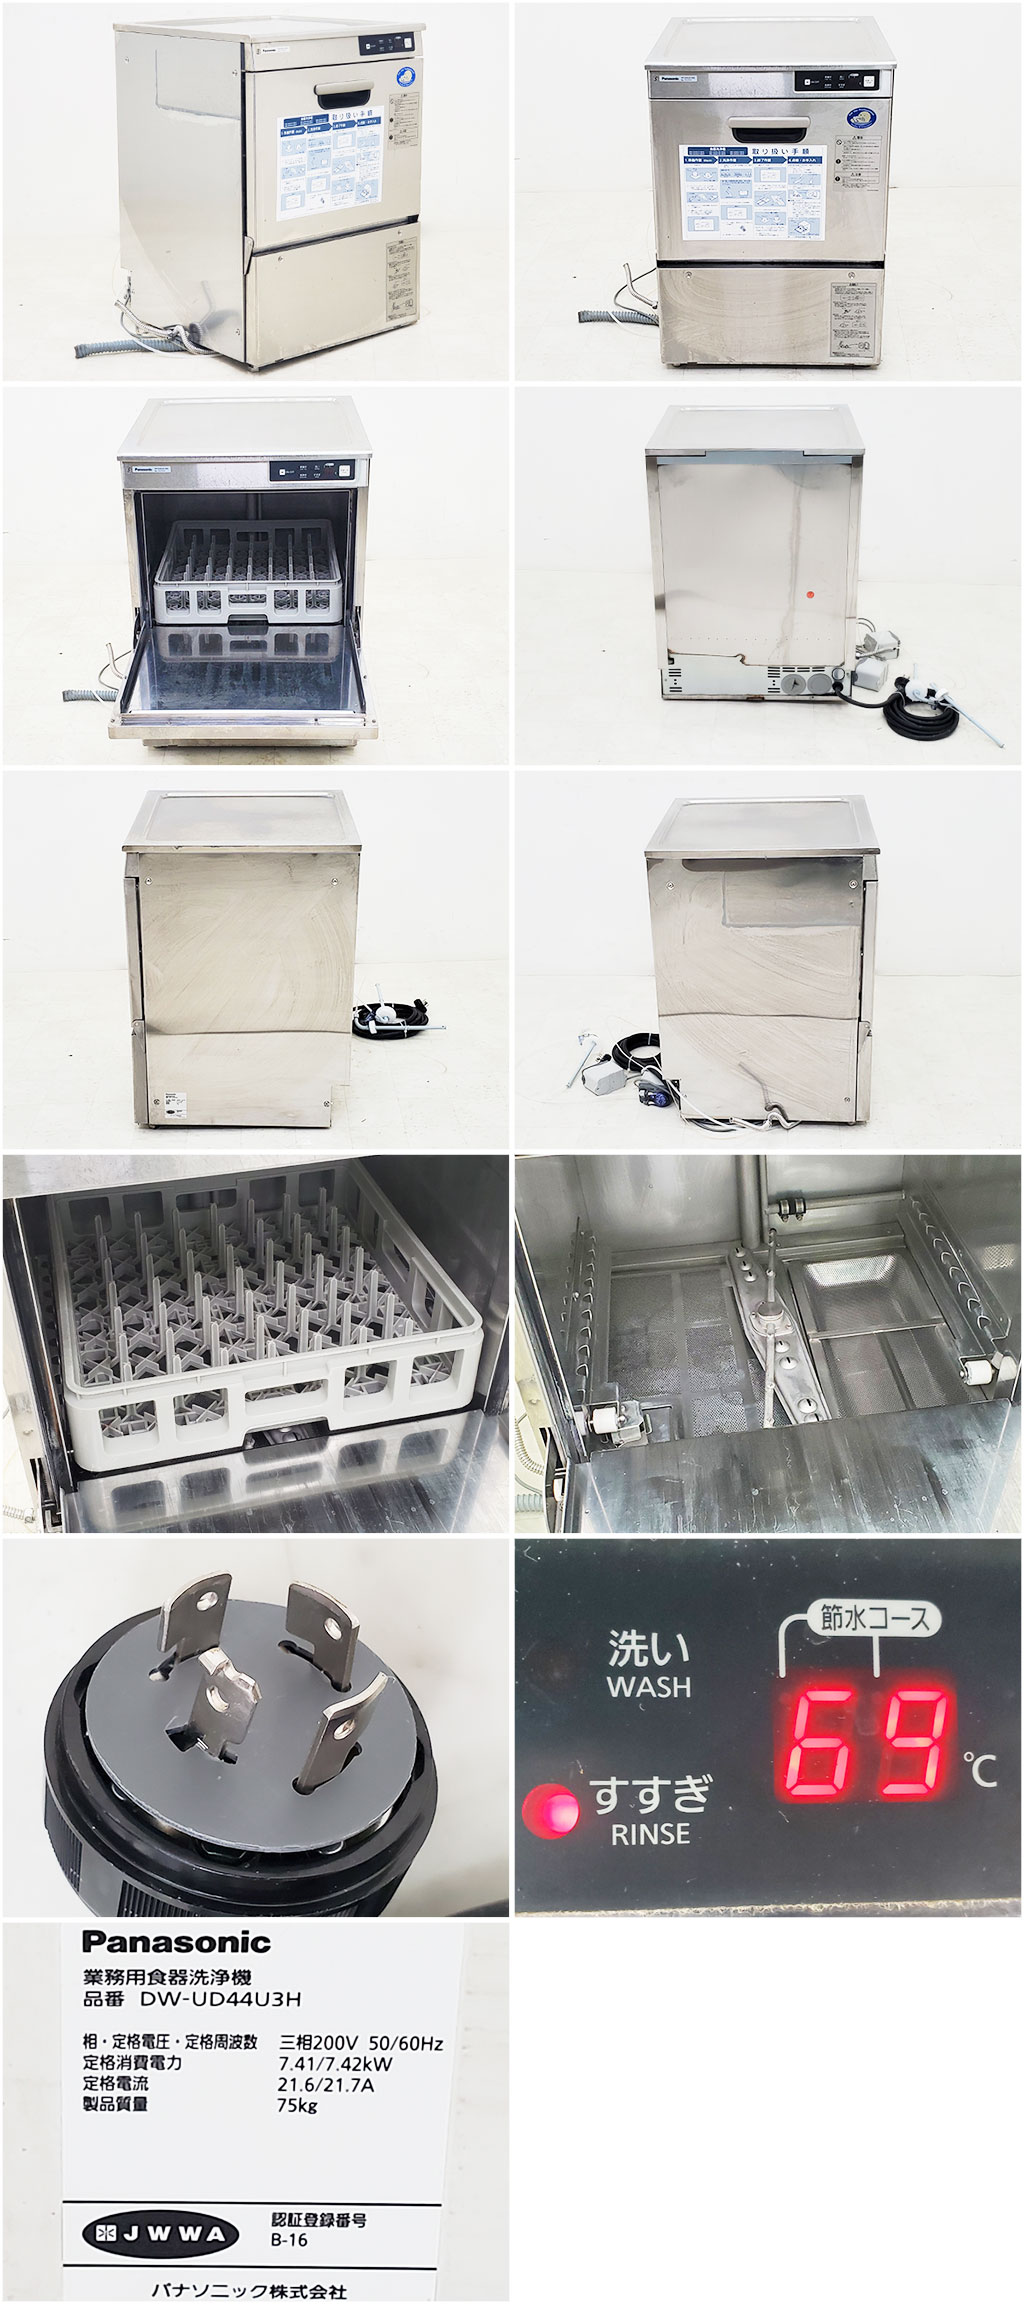 送料無料 新品 パナソニック 食器洗浄機 アンダーカウンター DW-UD44U - 1